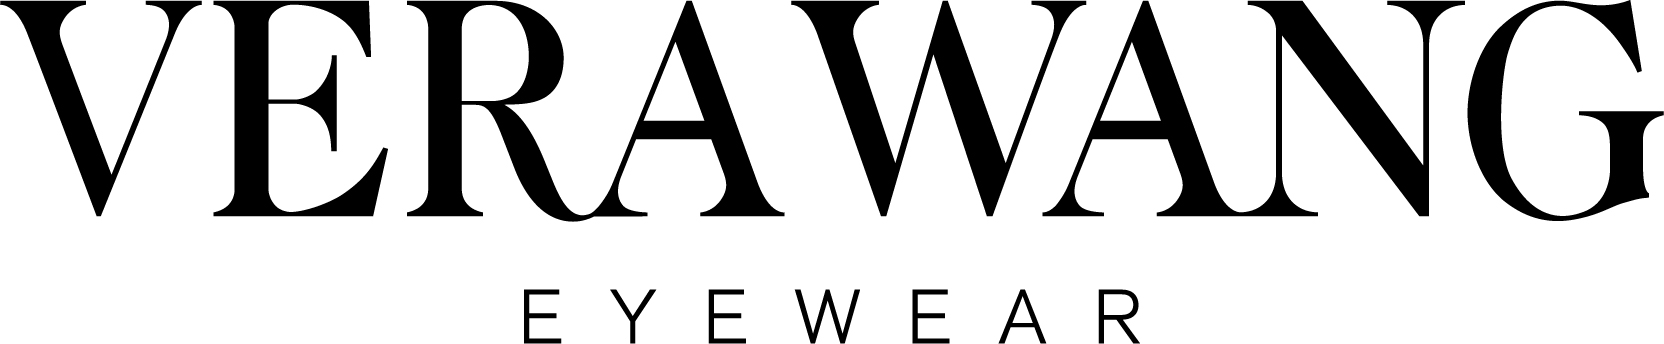 Verawang-Eyewear-logo.jpg